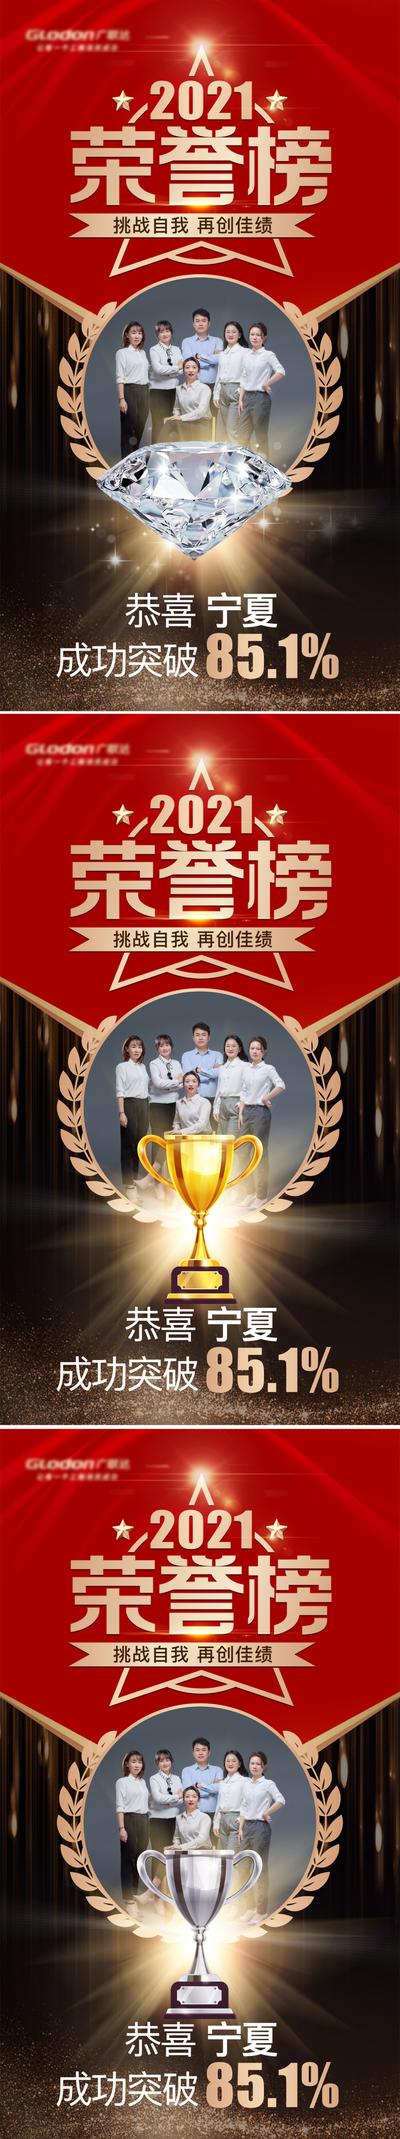 南门网 海报 荣誉榜 荣耀榜 团队 奖杯 荣誉 系列